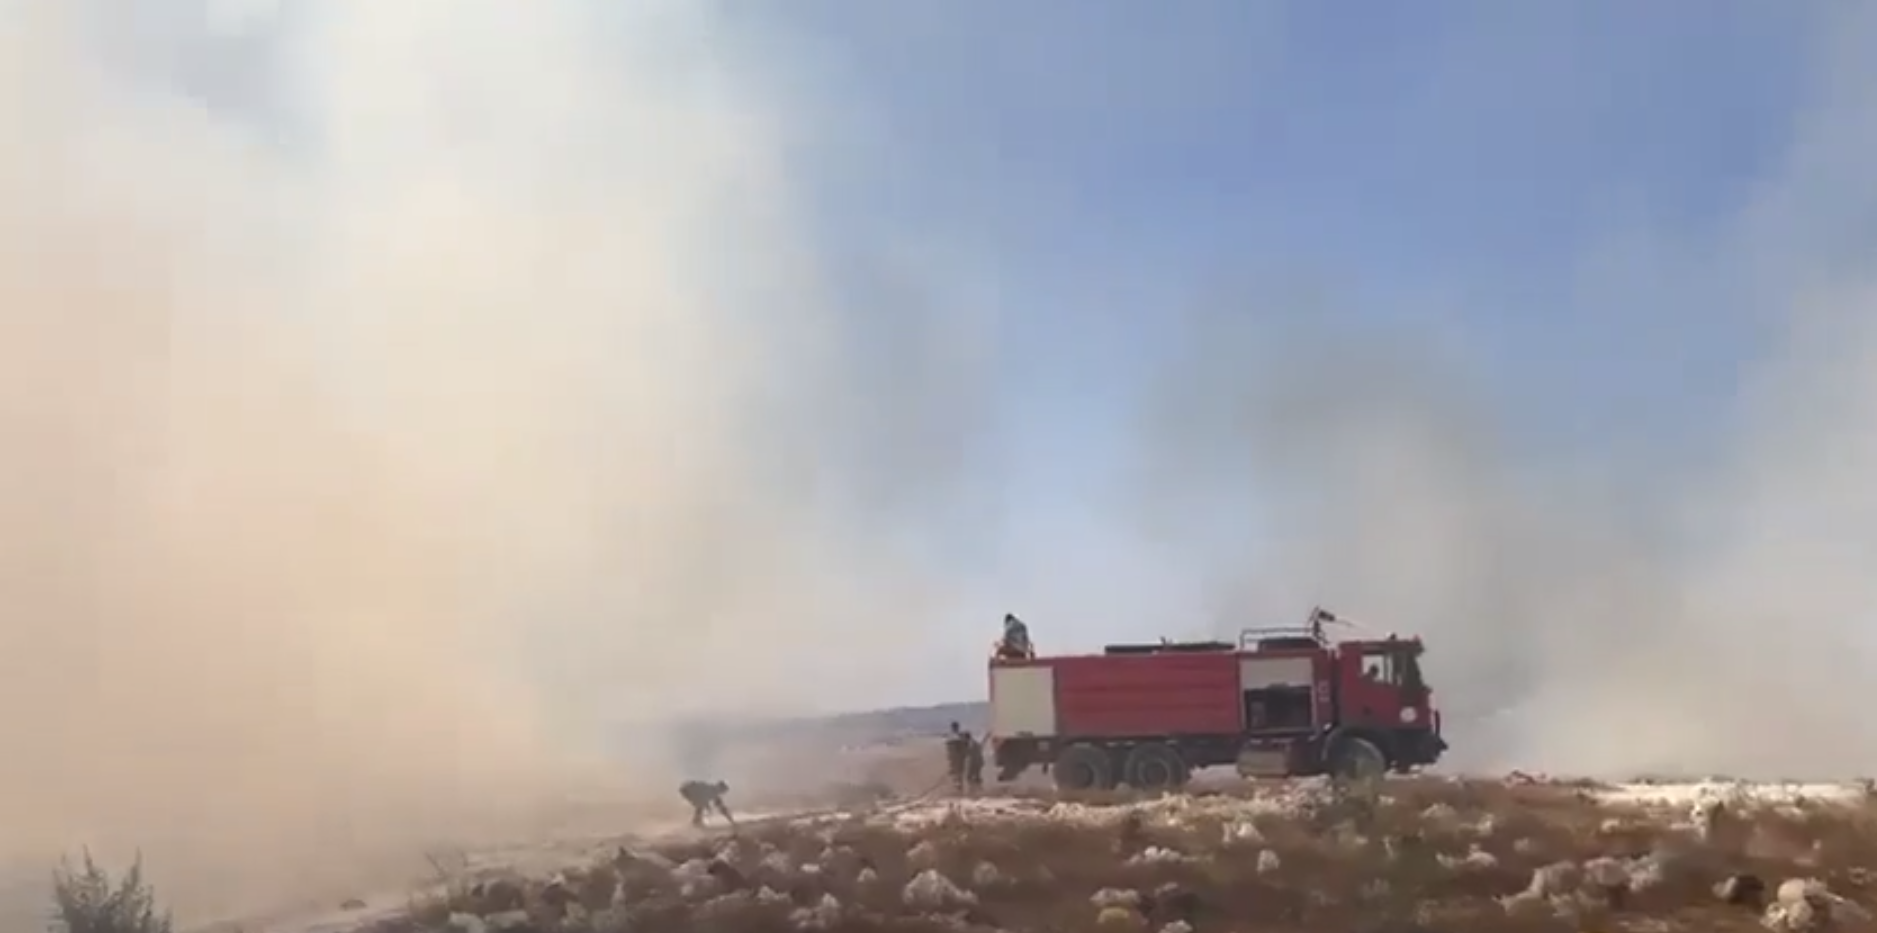 بالفيديو/ حريق ضخم في خراج بلدة ميس الجبل وإصابة عنصر إطفاء بالإختناق بسبب الدخان الكثيف